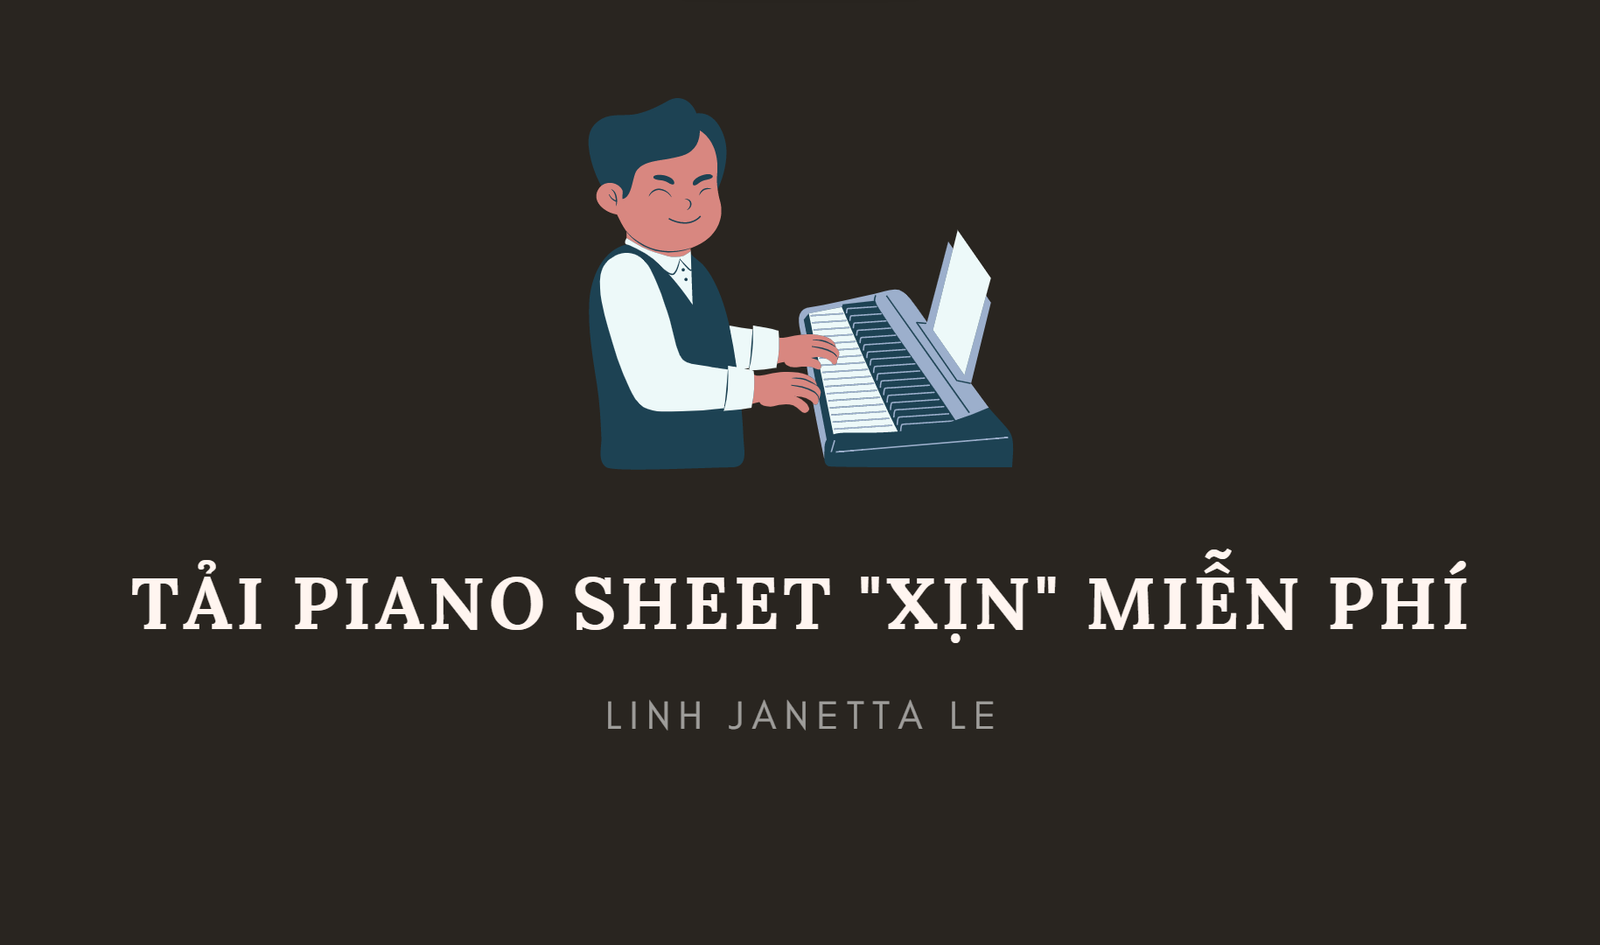 ♡ Tải Sheet Piano “Xịn” Miễn Phí ♡